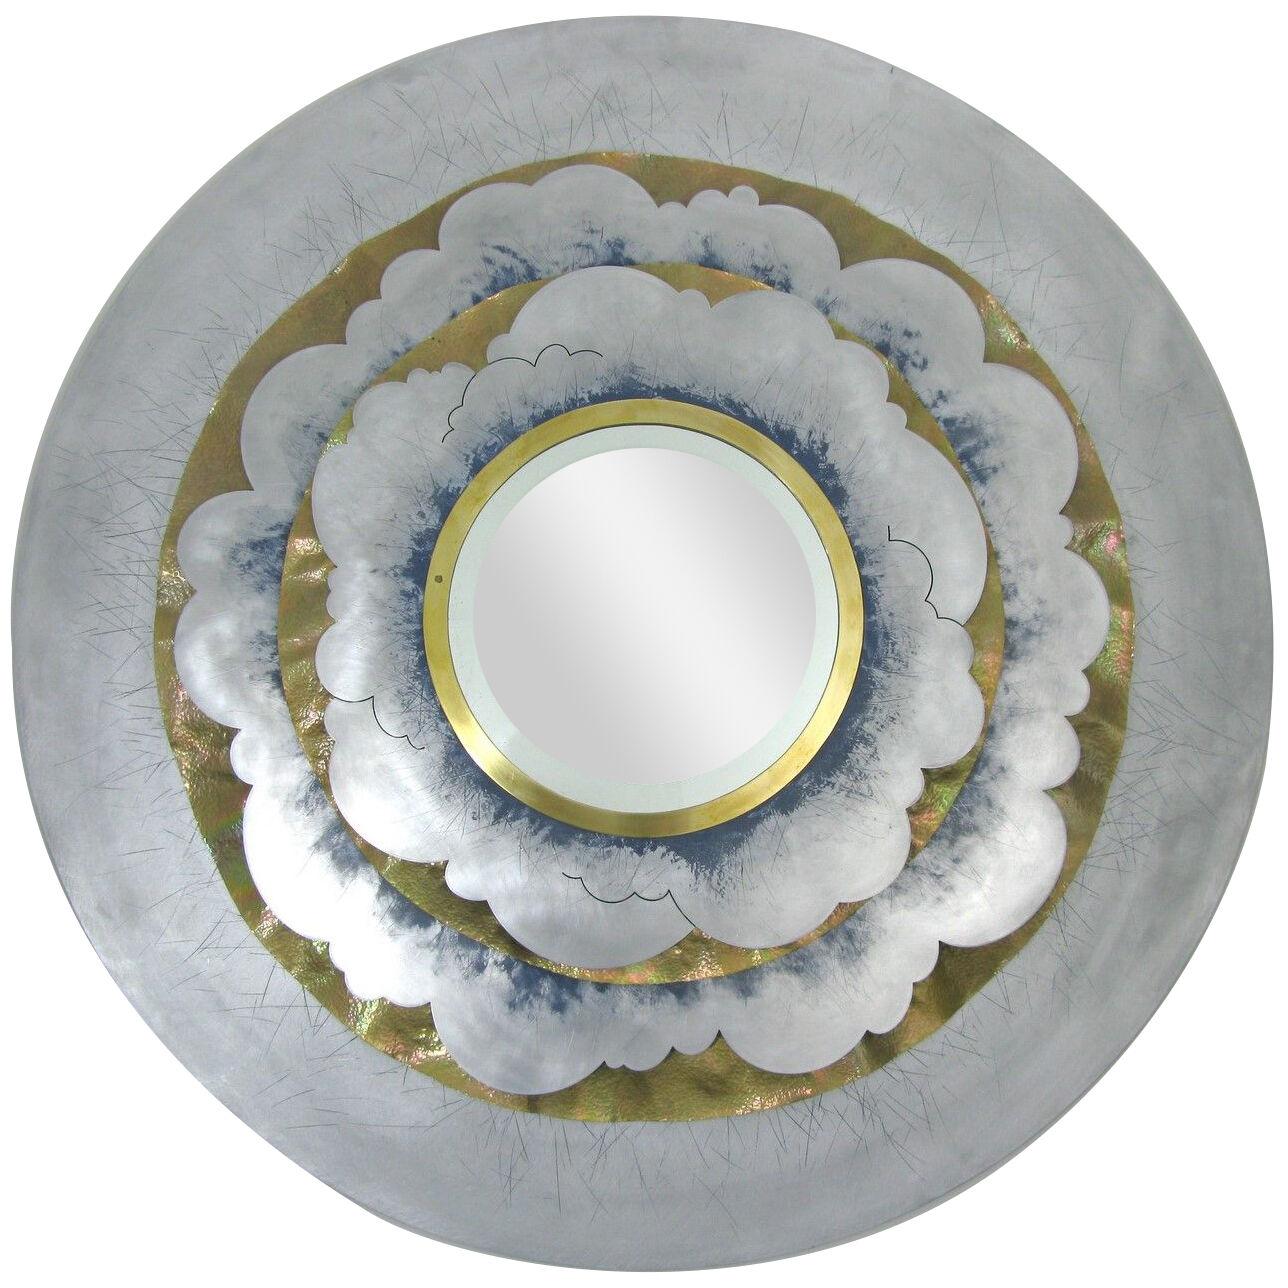 Contemporary aluminium mirror by Daniel Azaro, a unique piece.